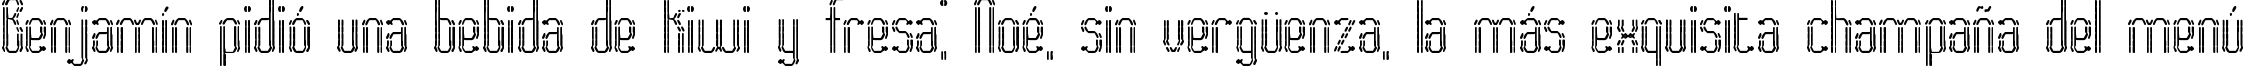 Пример написания шрифтом Fascii BRK текста на испанском